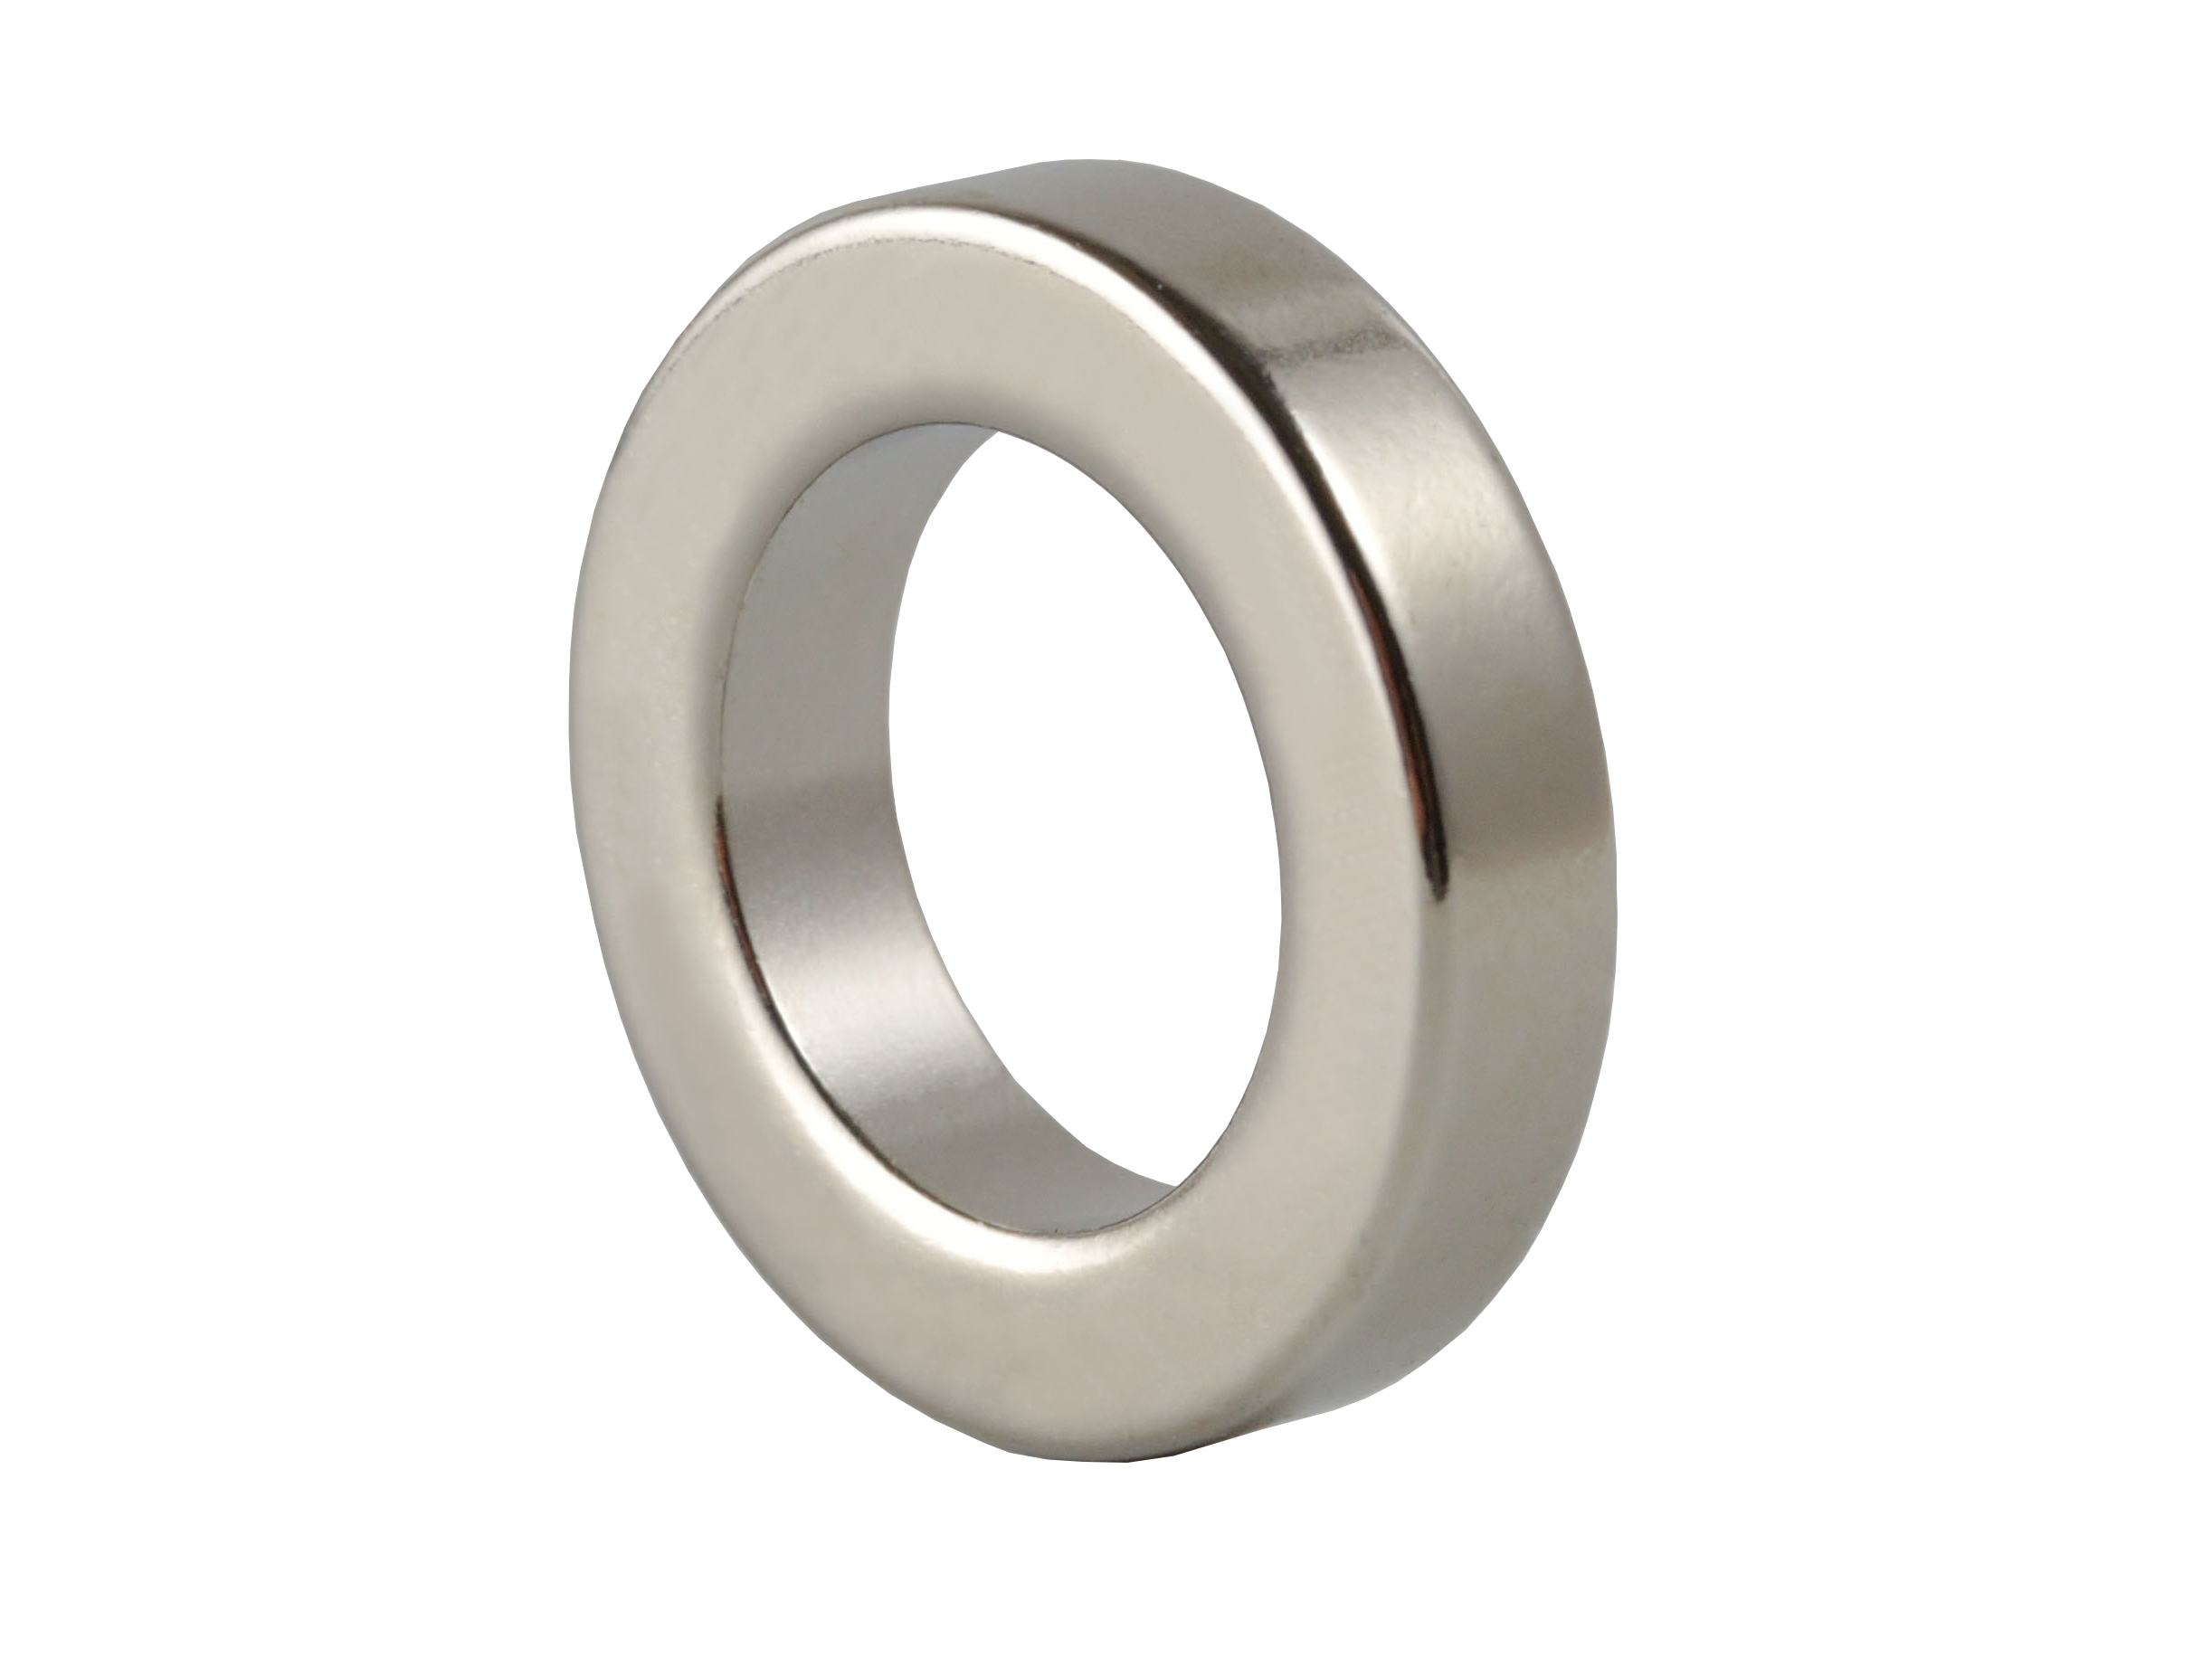 Ring‑Shaped Neodymium Magnet (NOR033) 